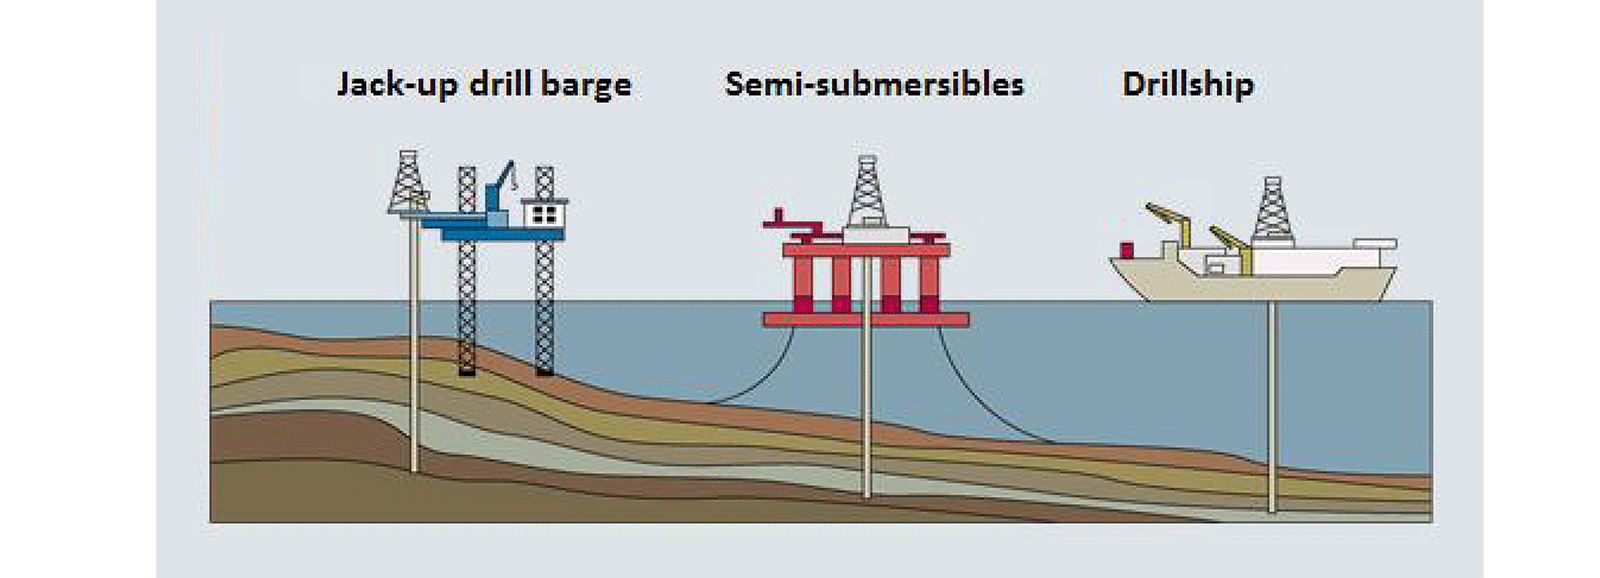 Campo petrolífero marinho